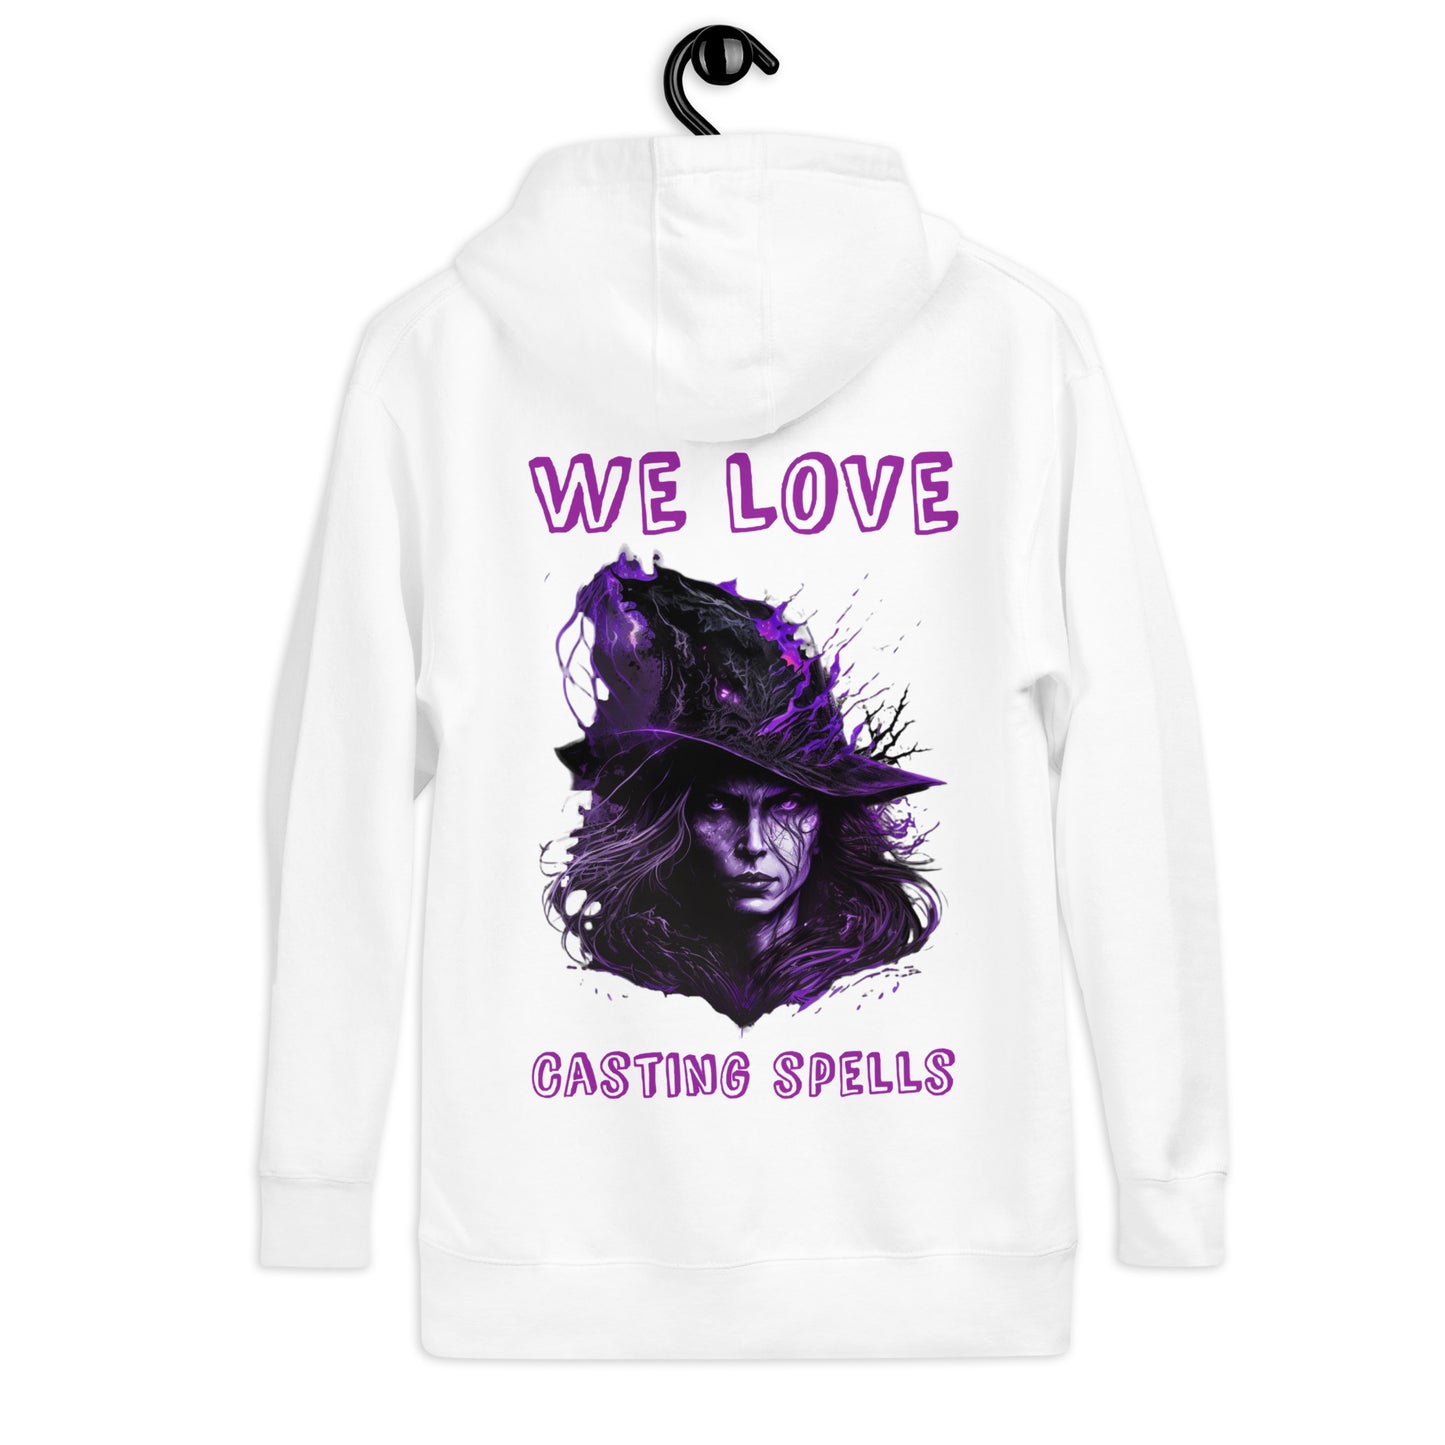 We love casting spells hoodie